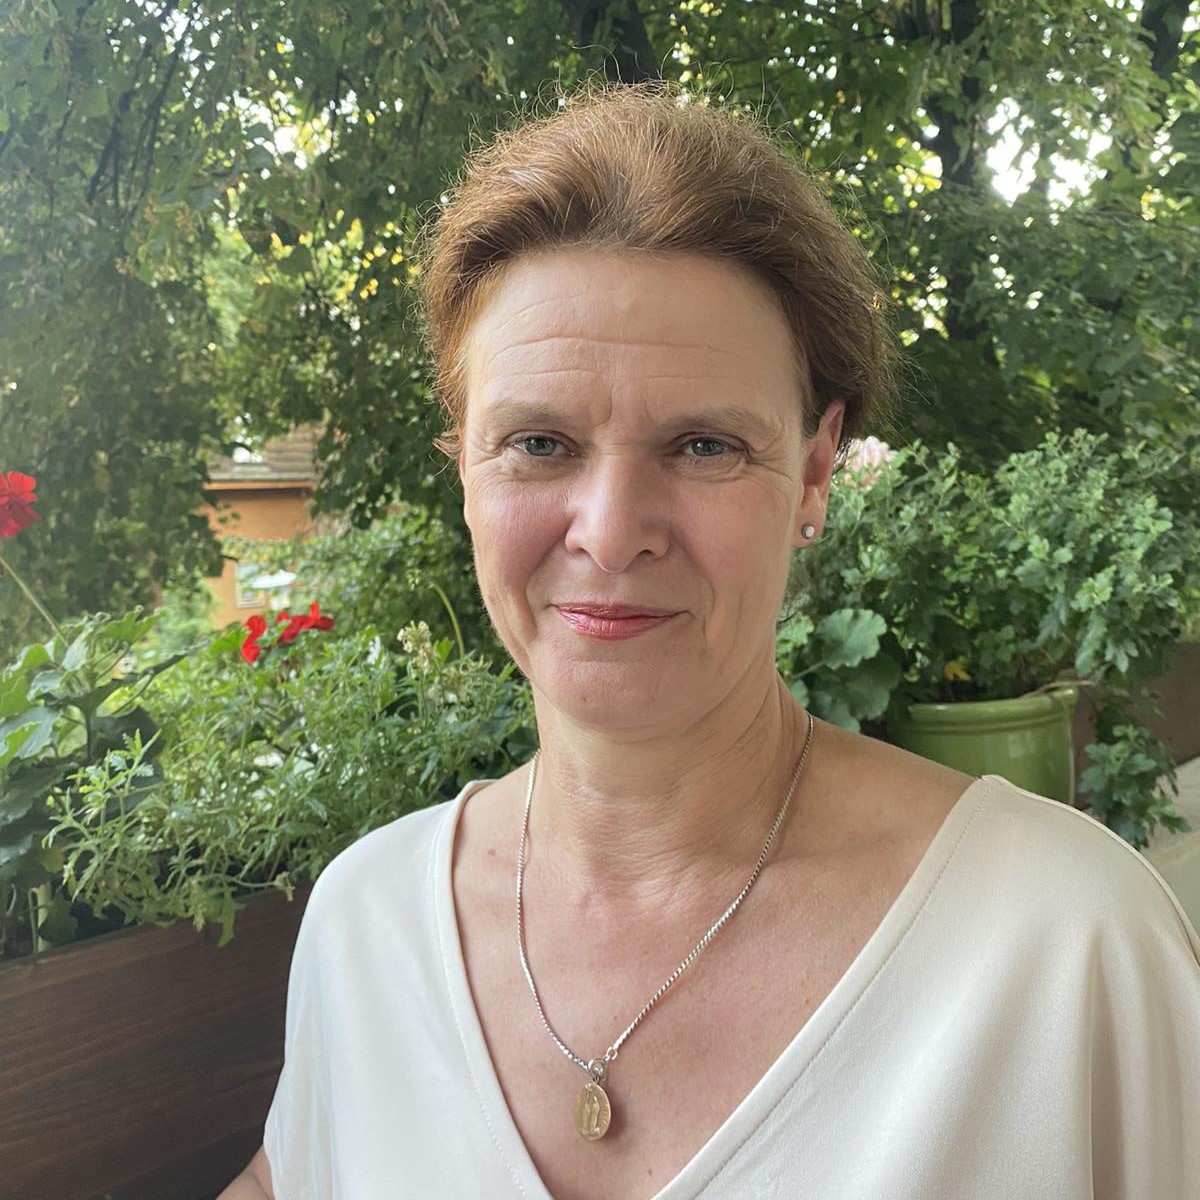 Profile image of Dr Éva Sztáray Kézdy